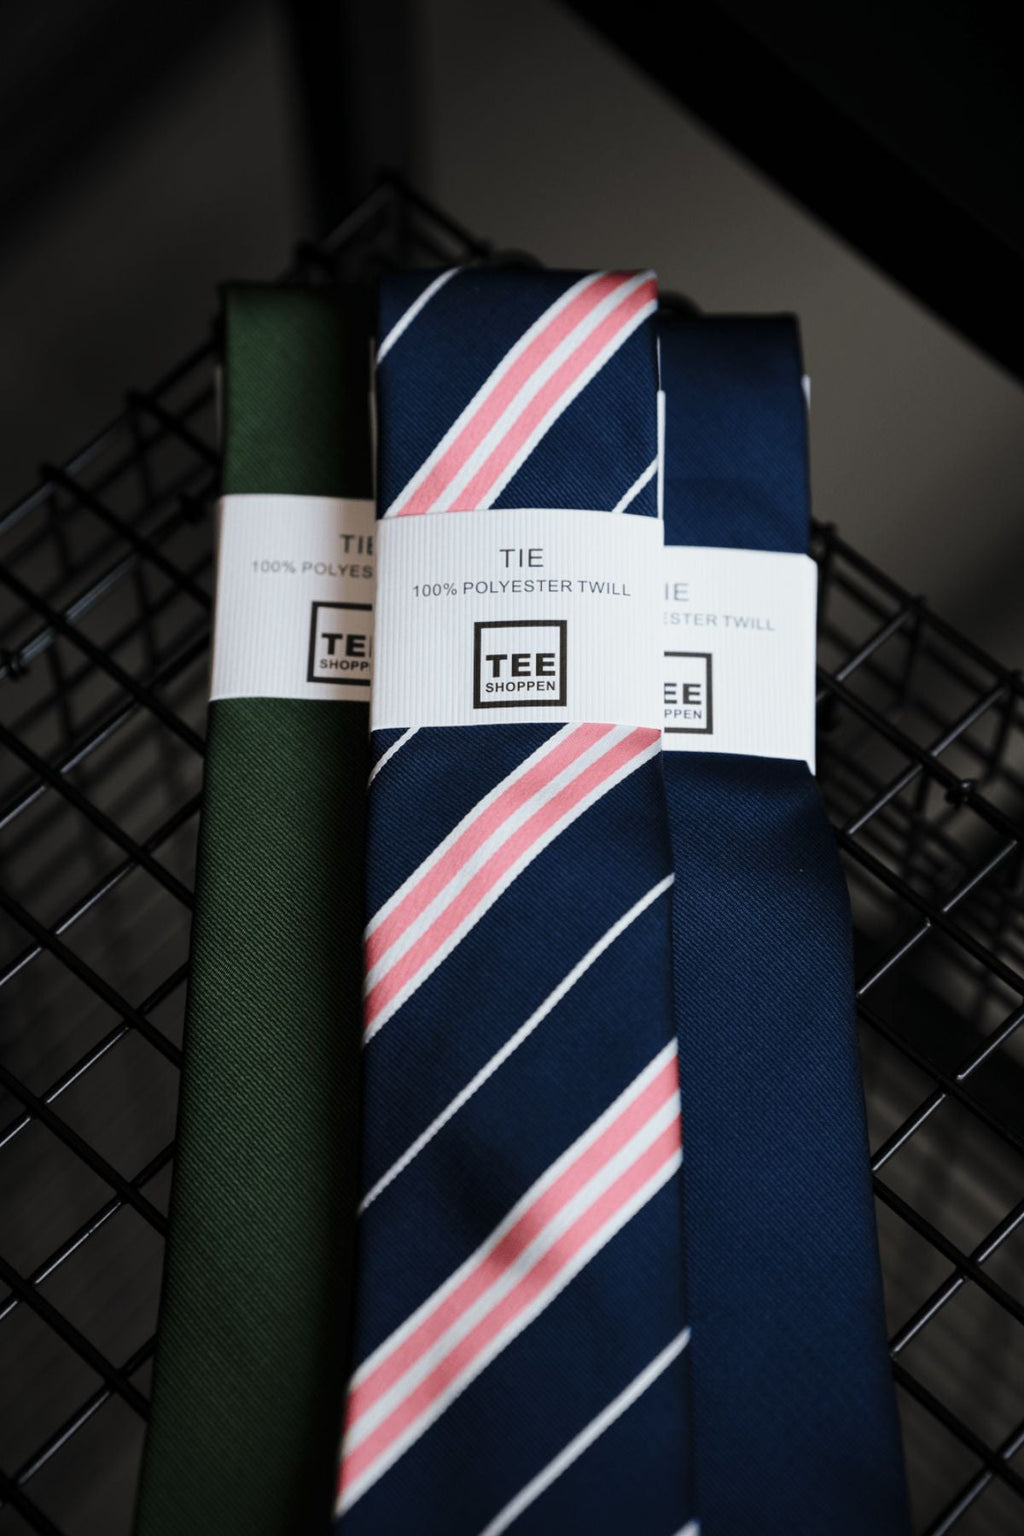 Tie - Dark Green